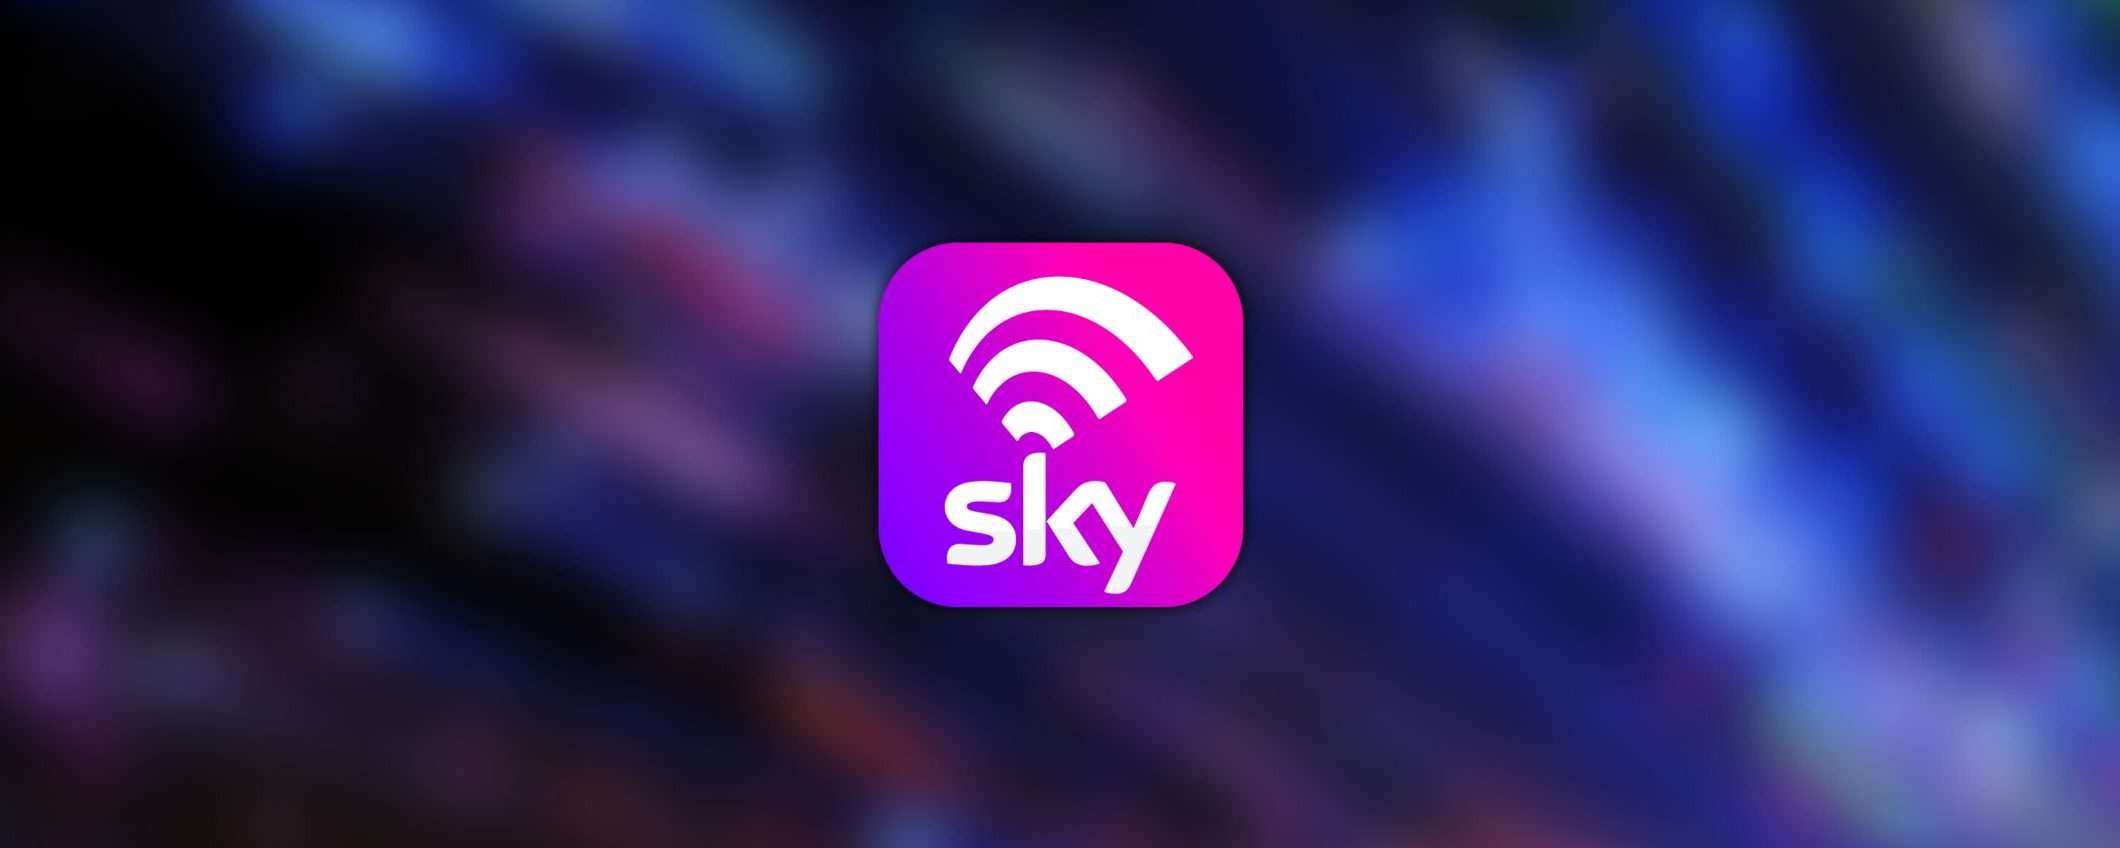 Sky WiFi: con la nuova offerta ZERO costi di attivazione e hai un buono Amazon